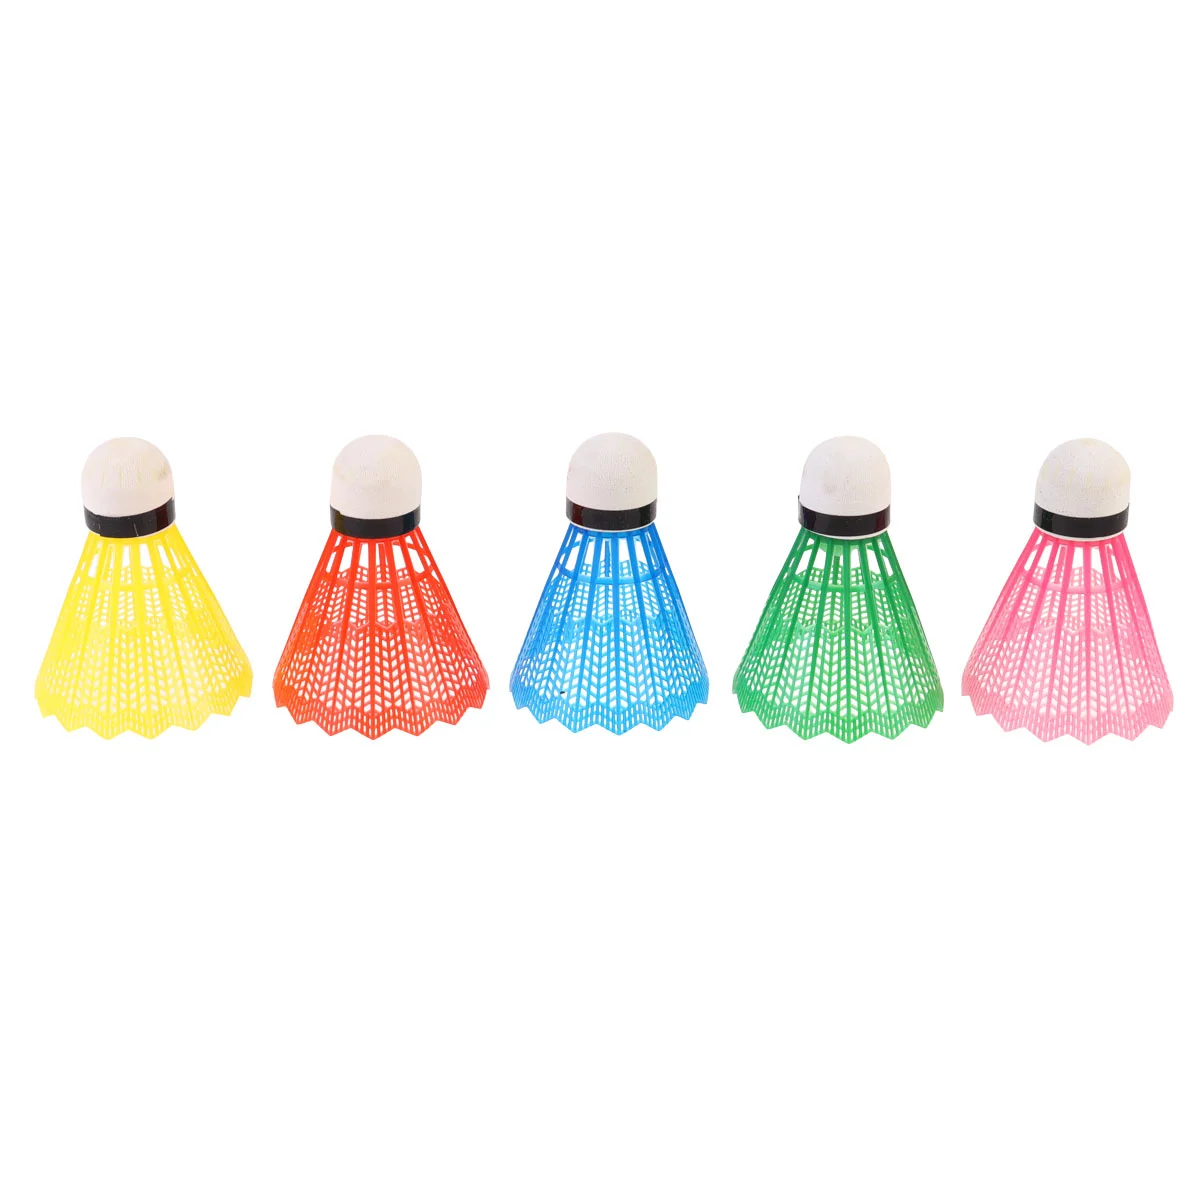 

6 шт. разноцветные шарики для бадминтона, воланы для бадминтона, аксессуары для бадминтона для спорта на открытом воздухе (случайные цвета)